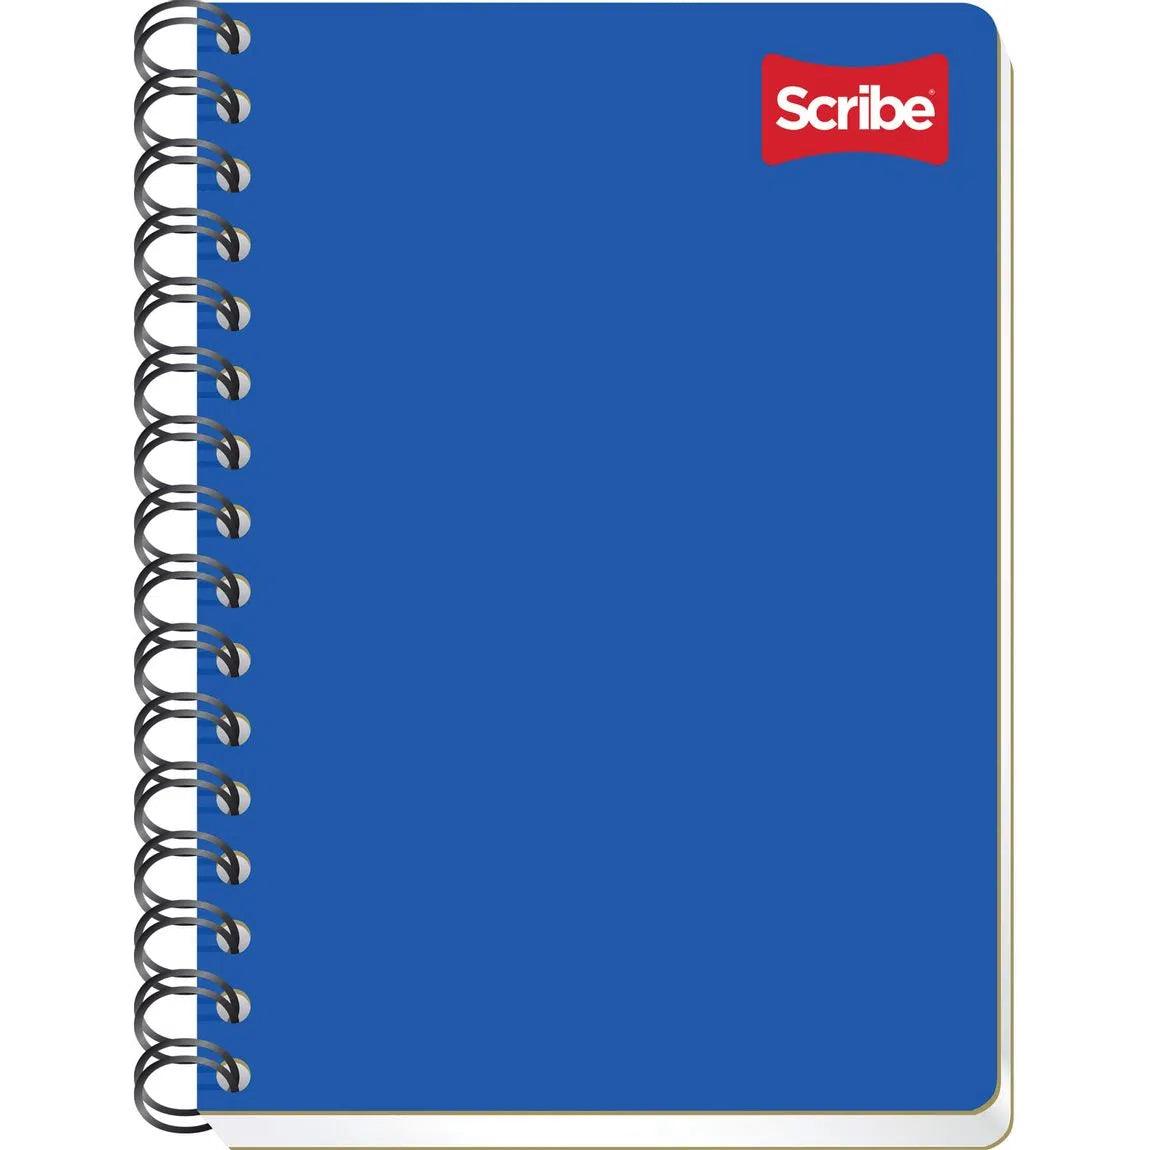 Cuaderno Francesa Scribe Cuadro Grande S1603 - Colmenero Shop